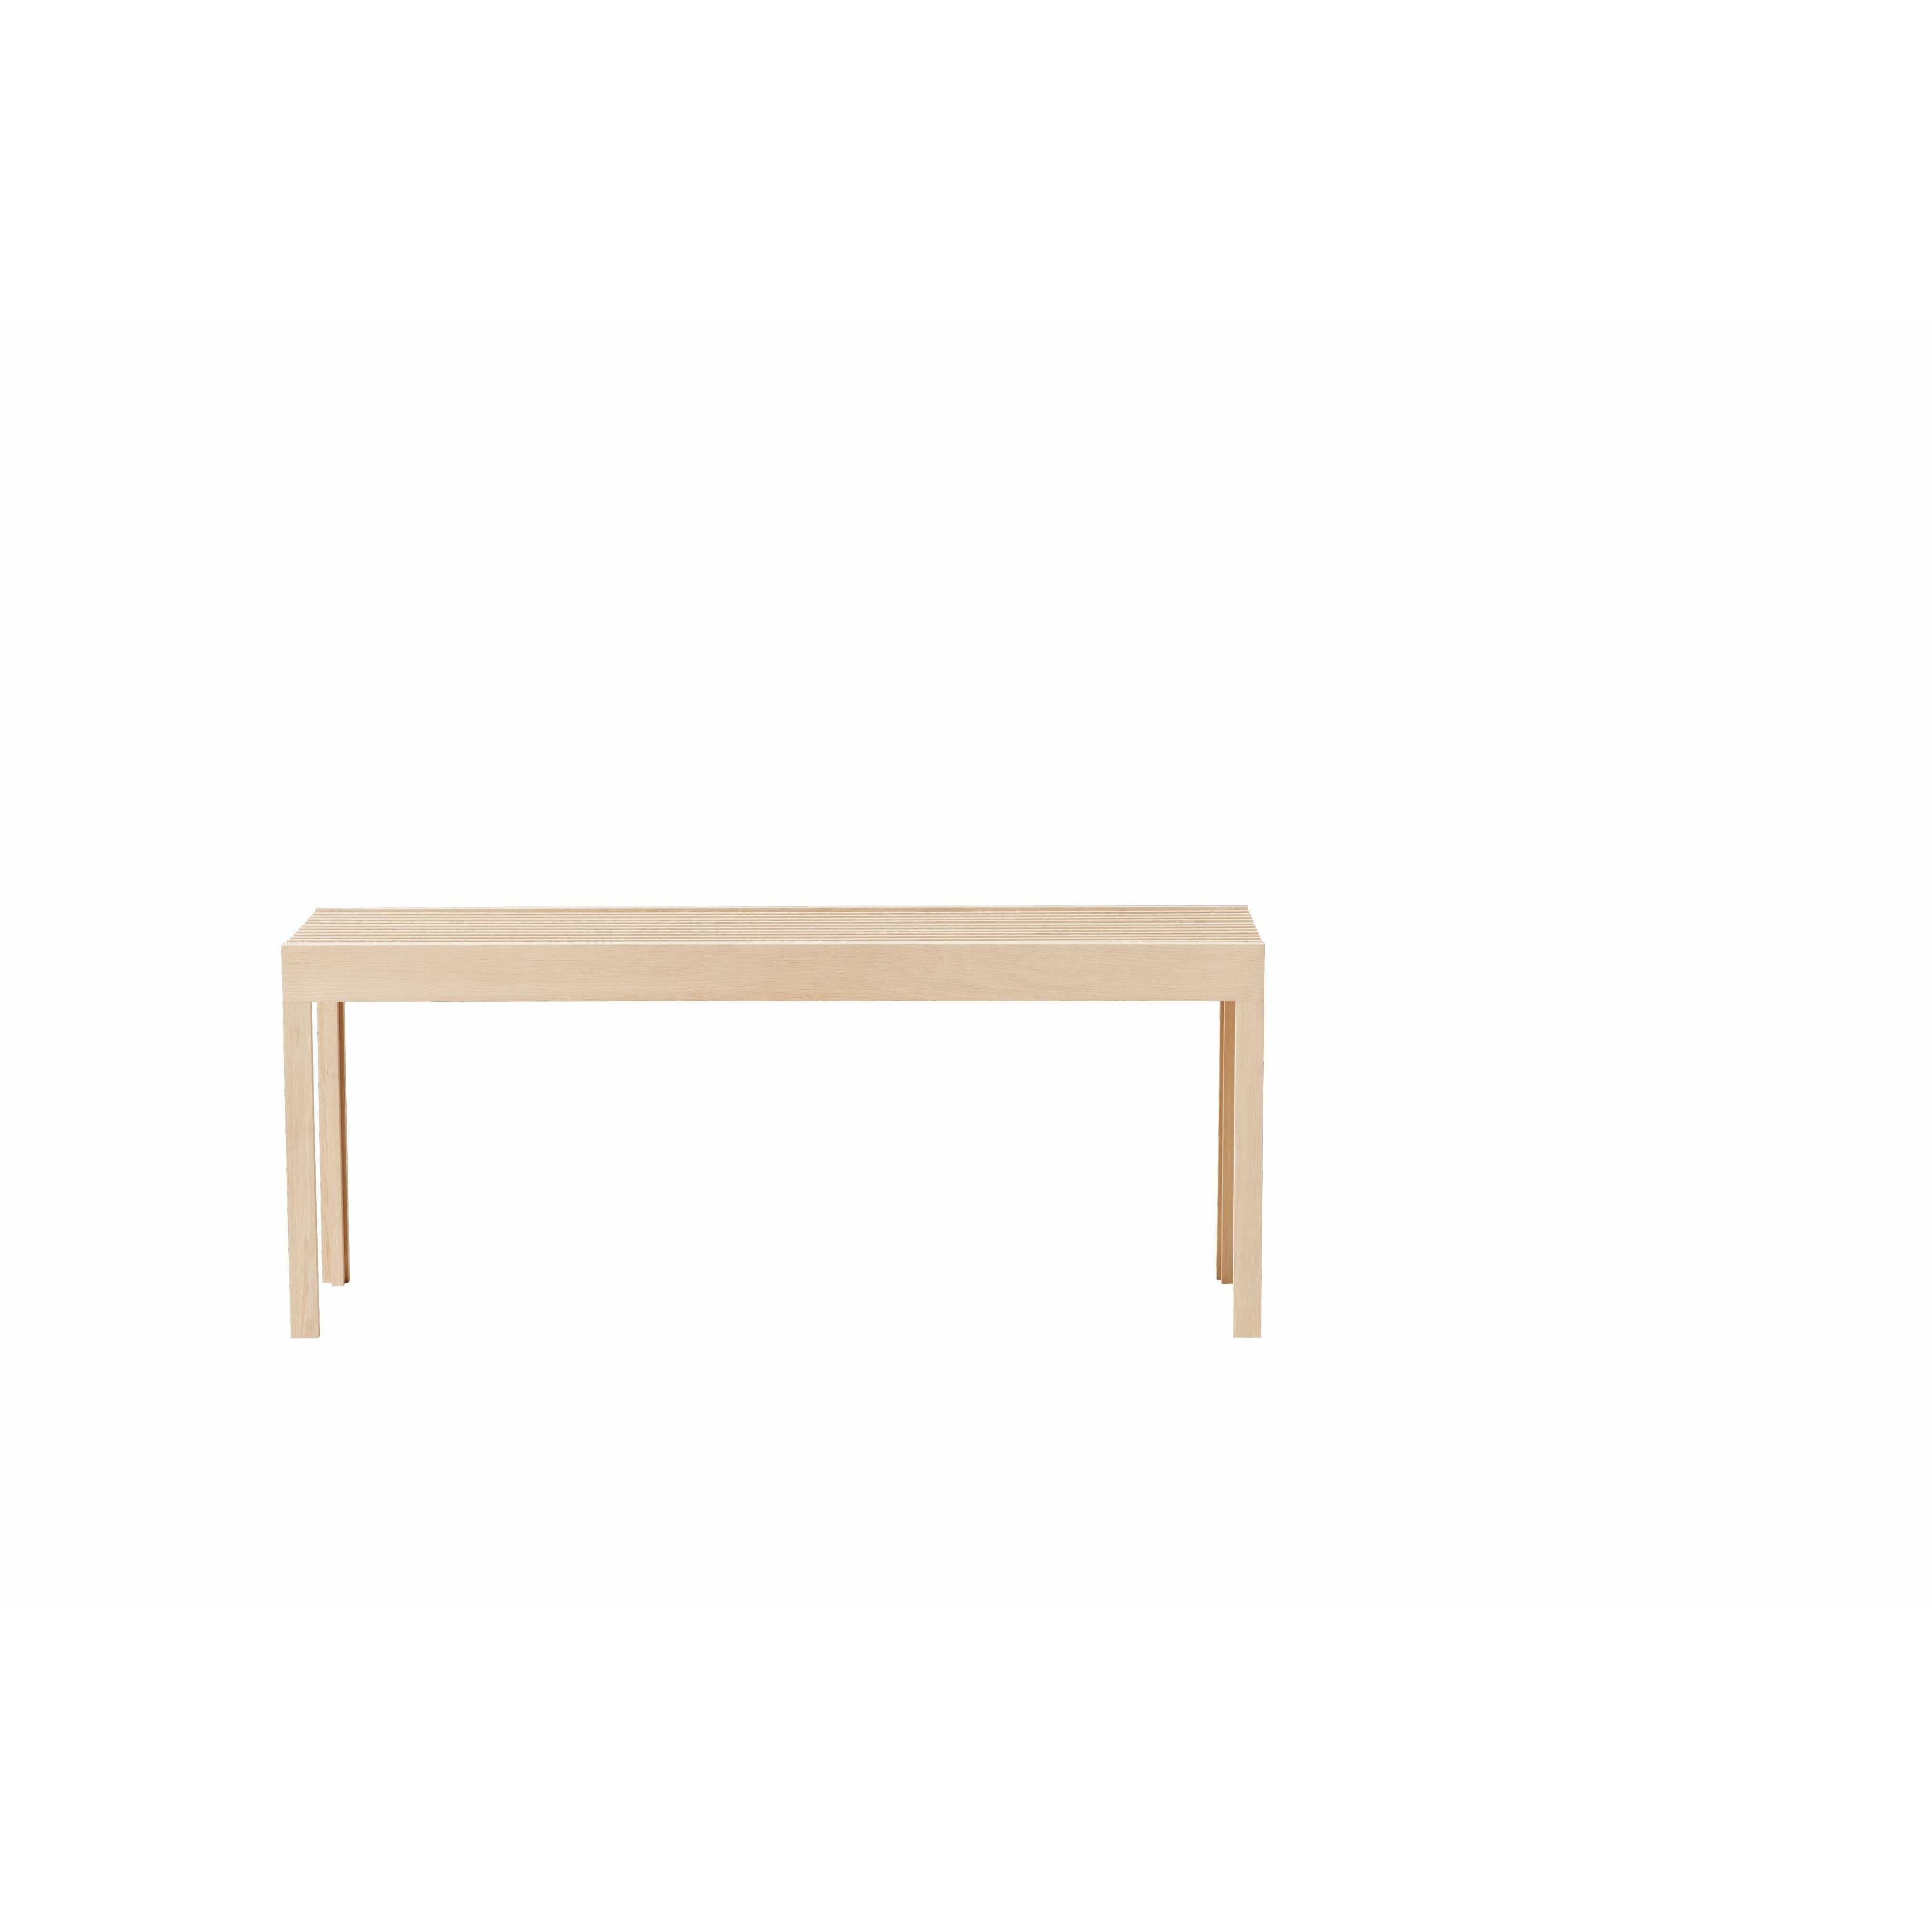 Form & Refine Lightweight Bench. White Oak